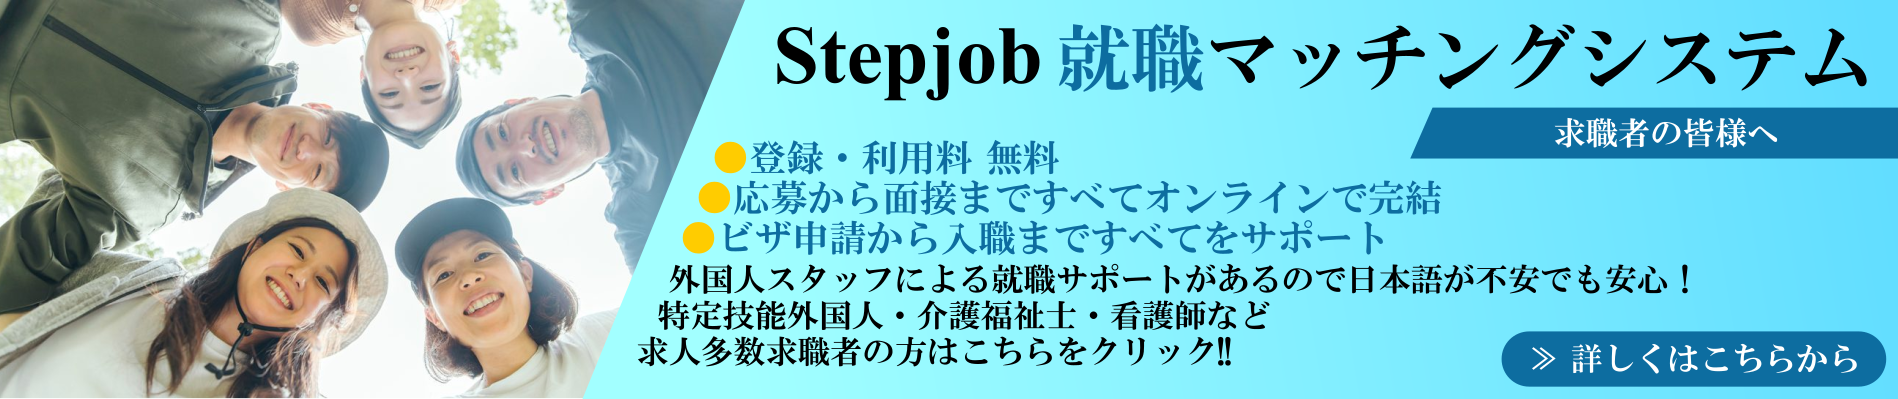 Stepjob就職マッチングシステム